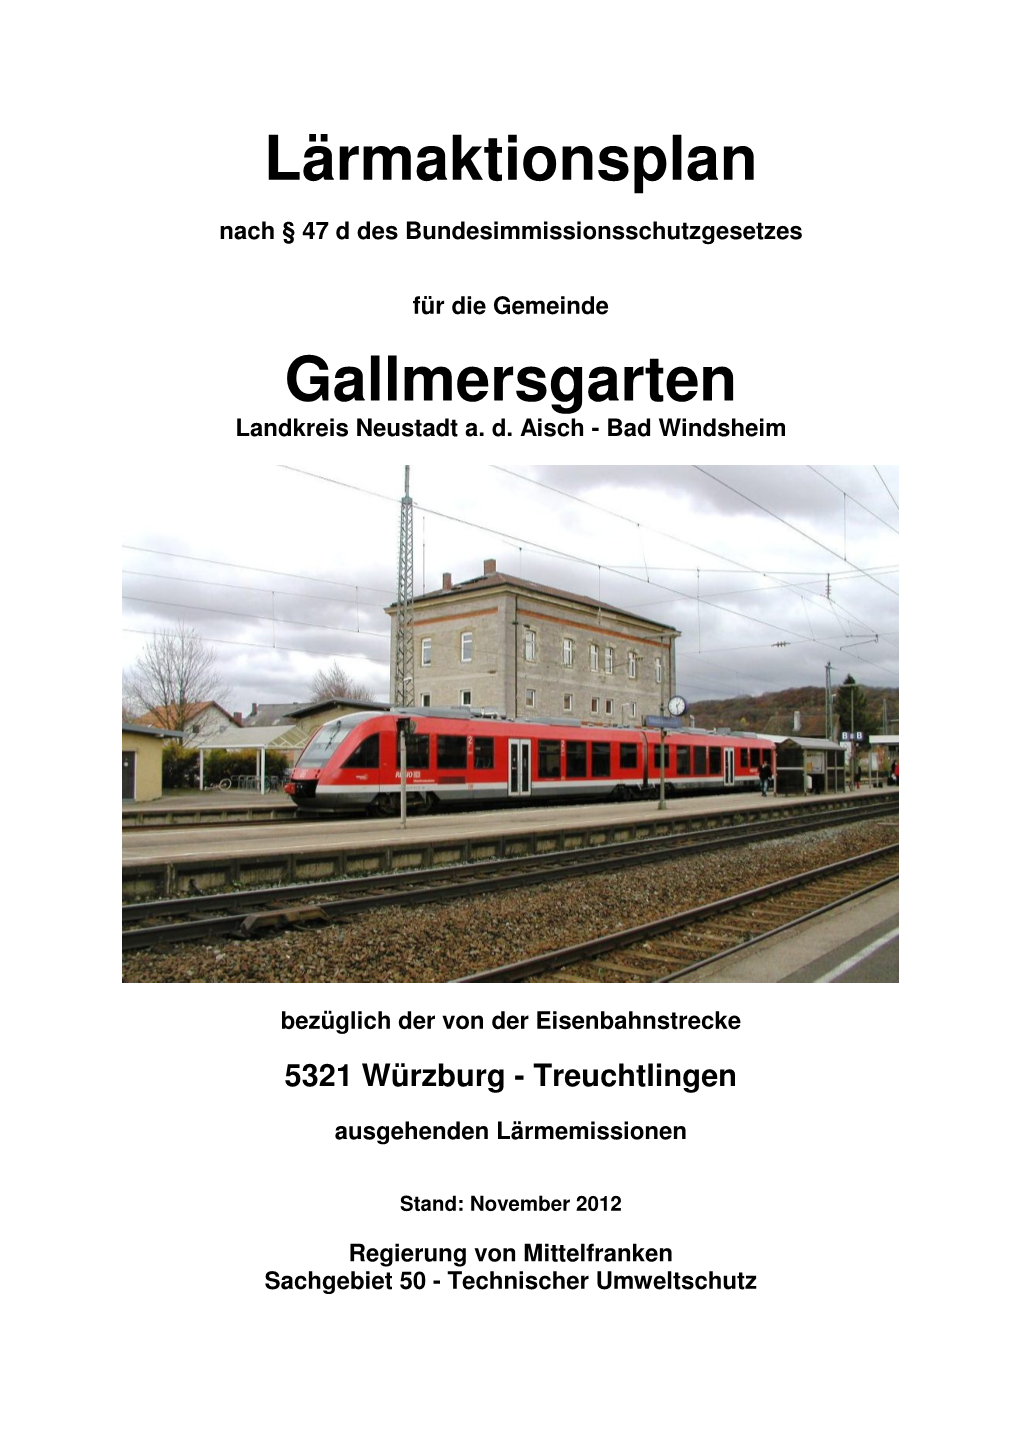 Lärmaktionsplan Gallmersgarten